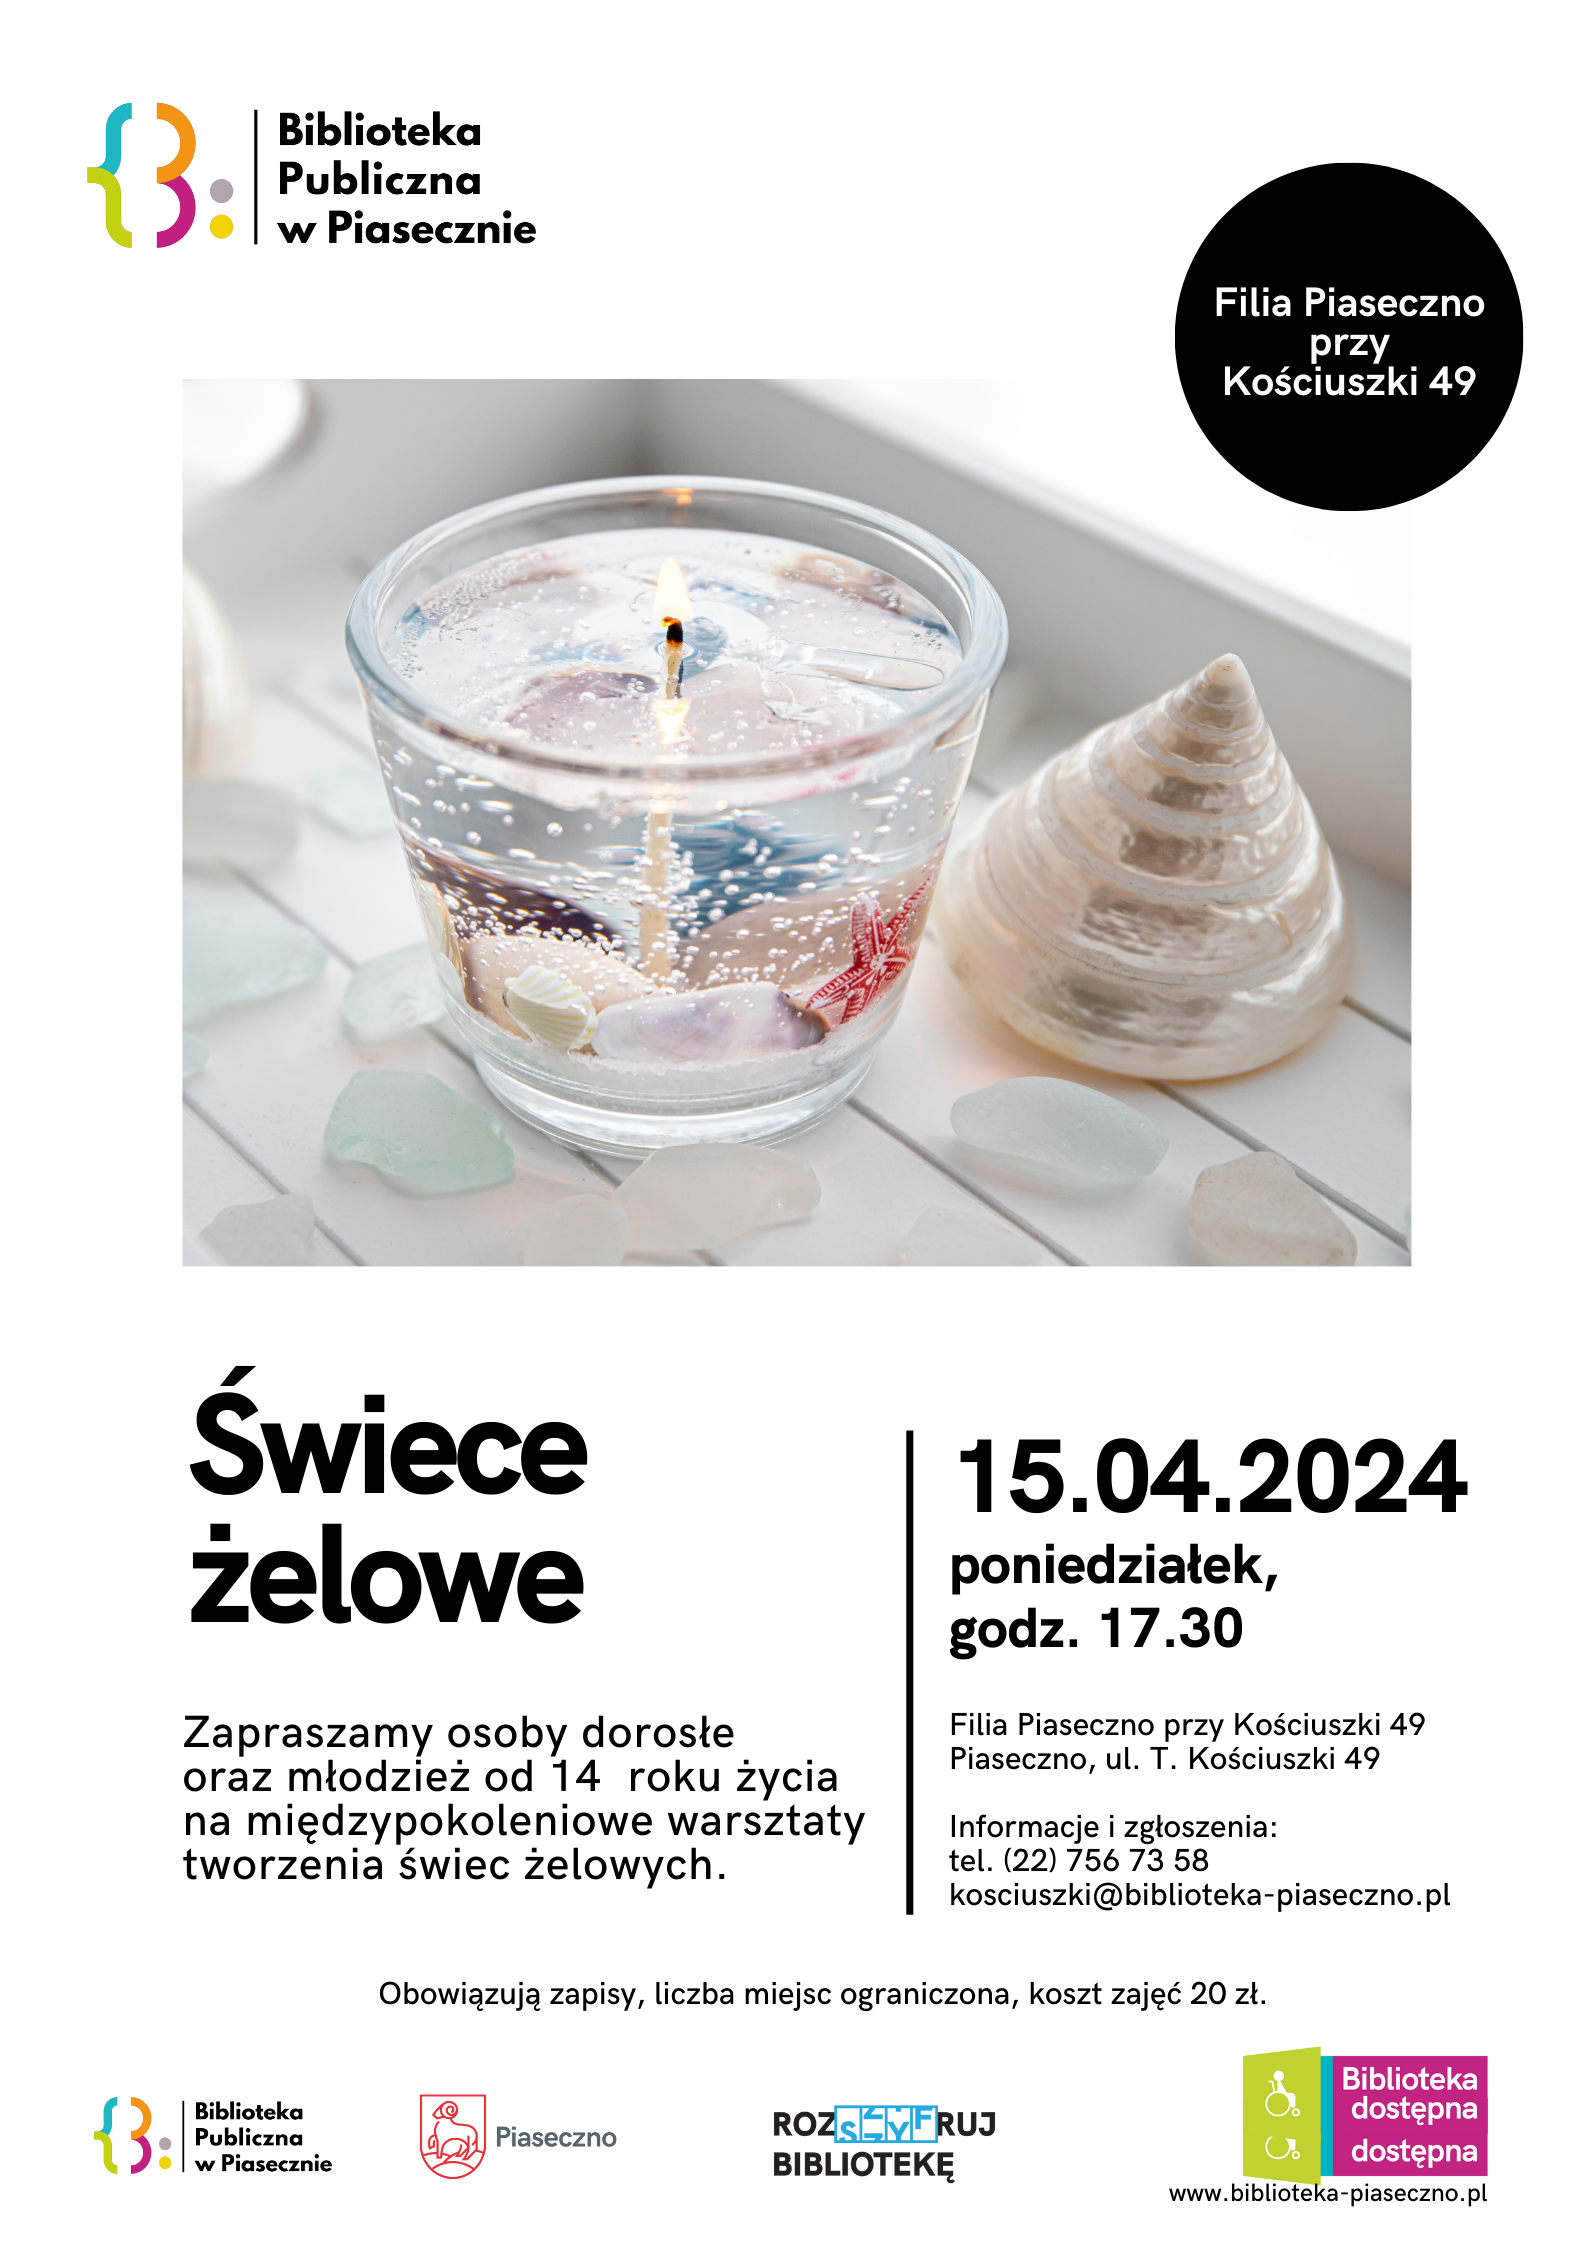 Plakat promujący warsztaty tworzenia świec żelowych